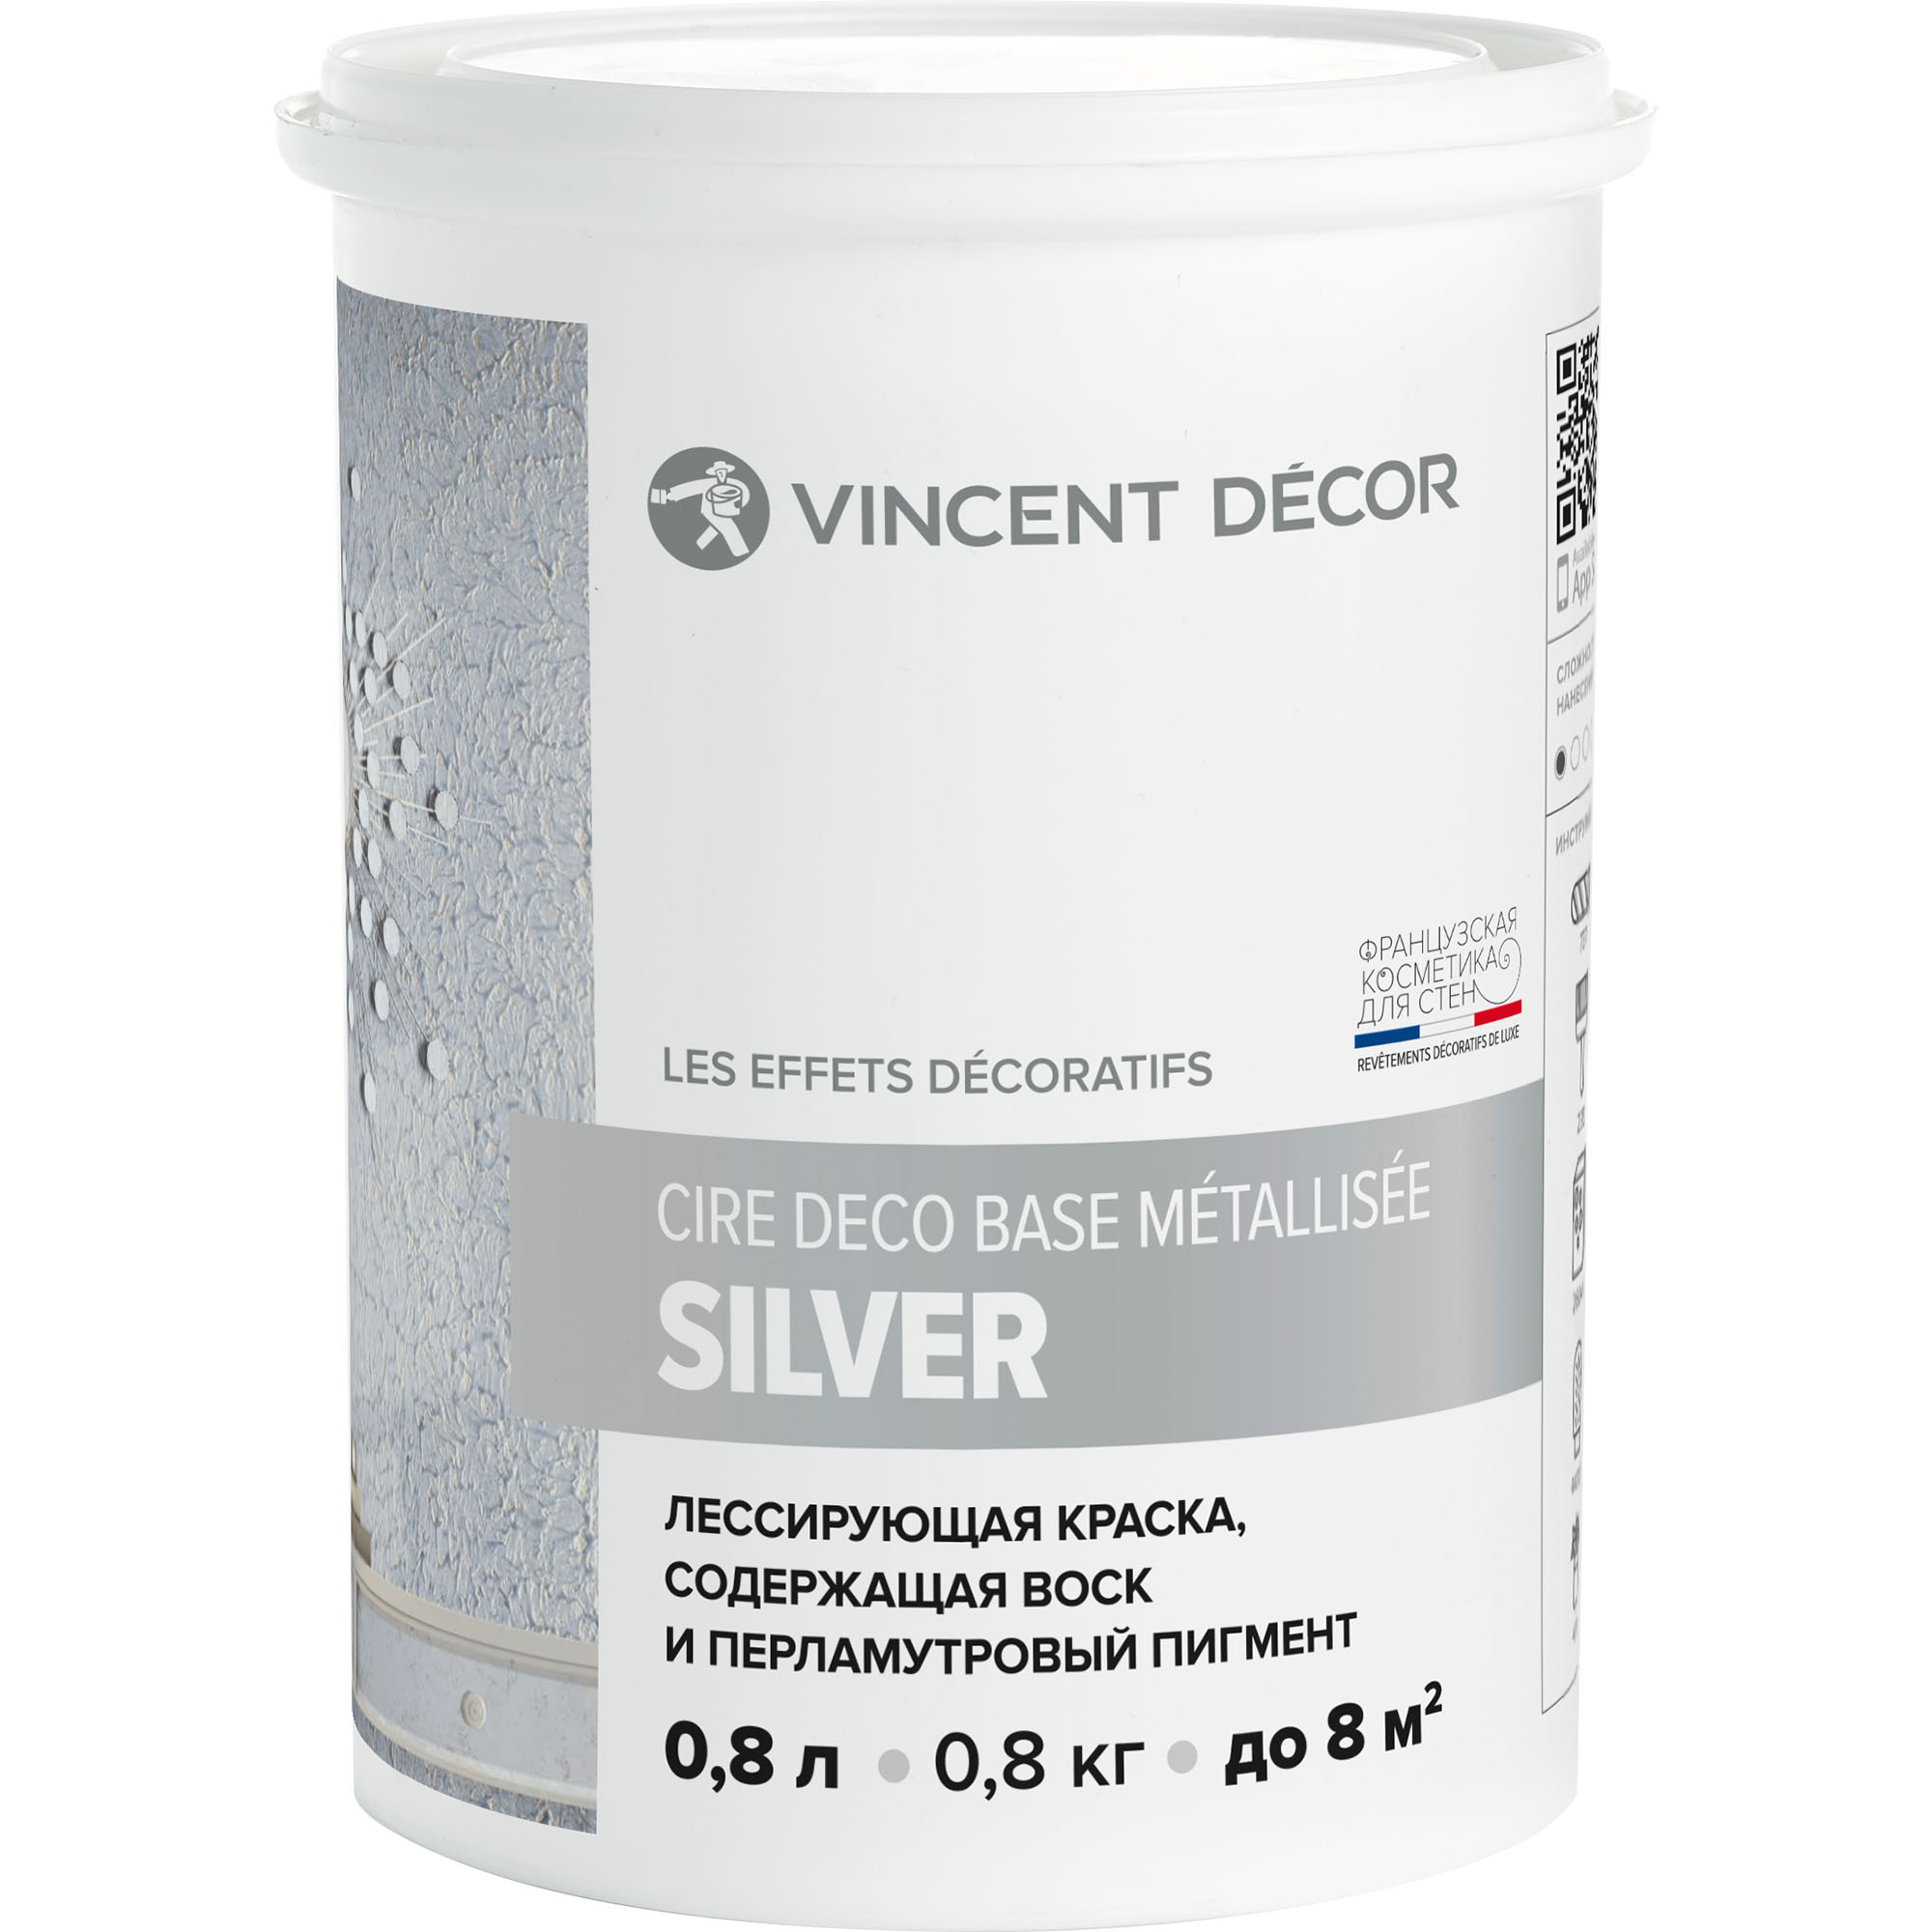 Краска лессирующая для декоративных покрытий Vincent Decor Cire deco base Metallisee Silver серебро 0,8 л грунтовка для декоративных покрытий vincent decor sous couсhe 2 5 л